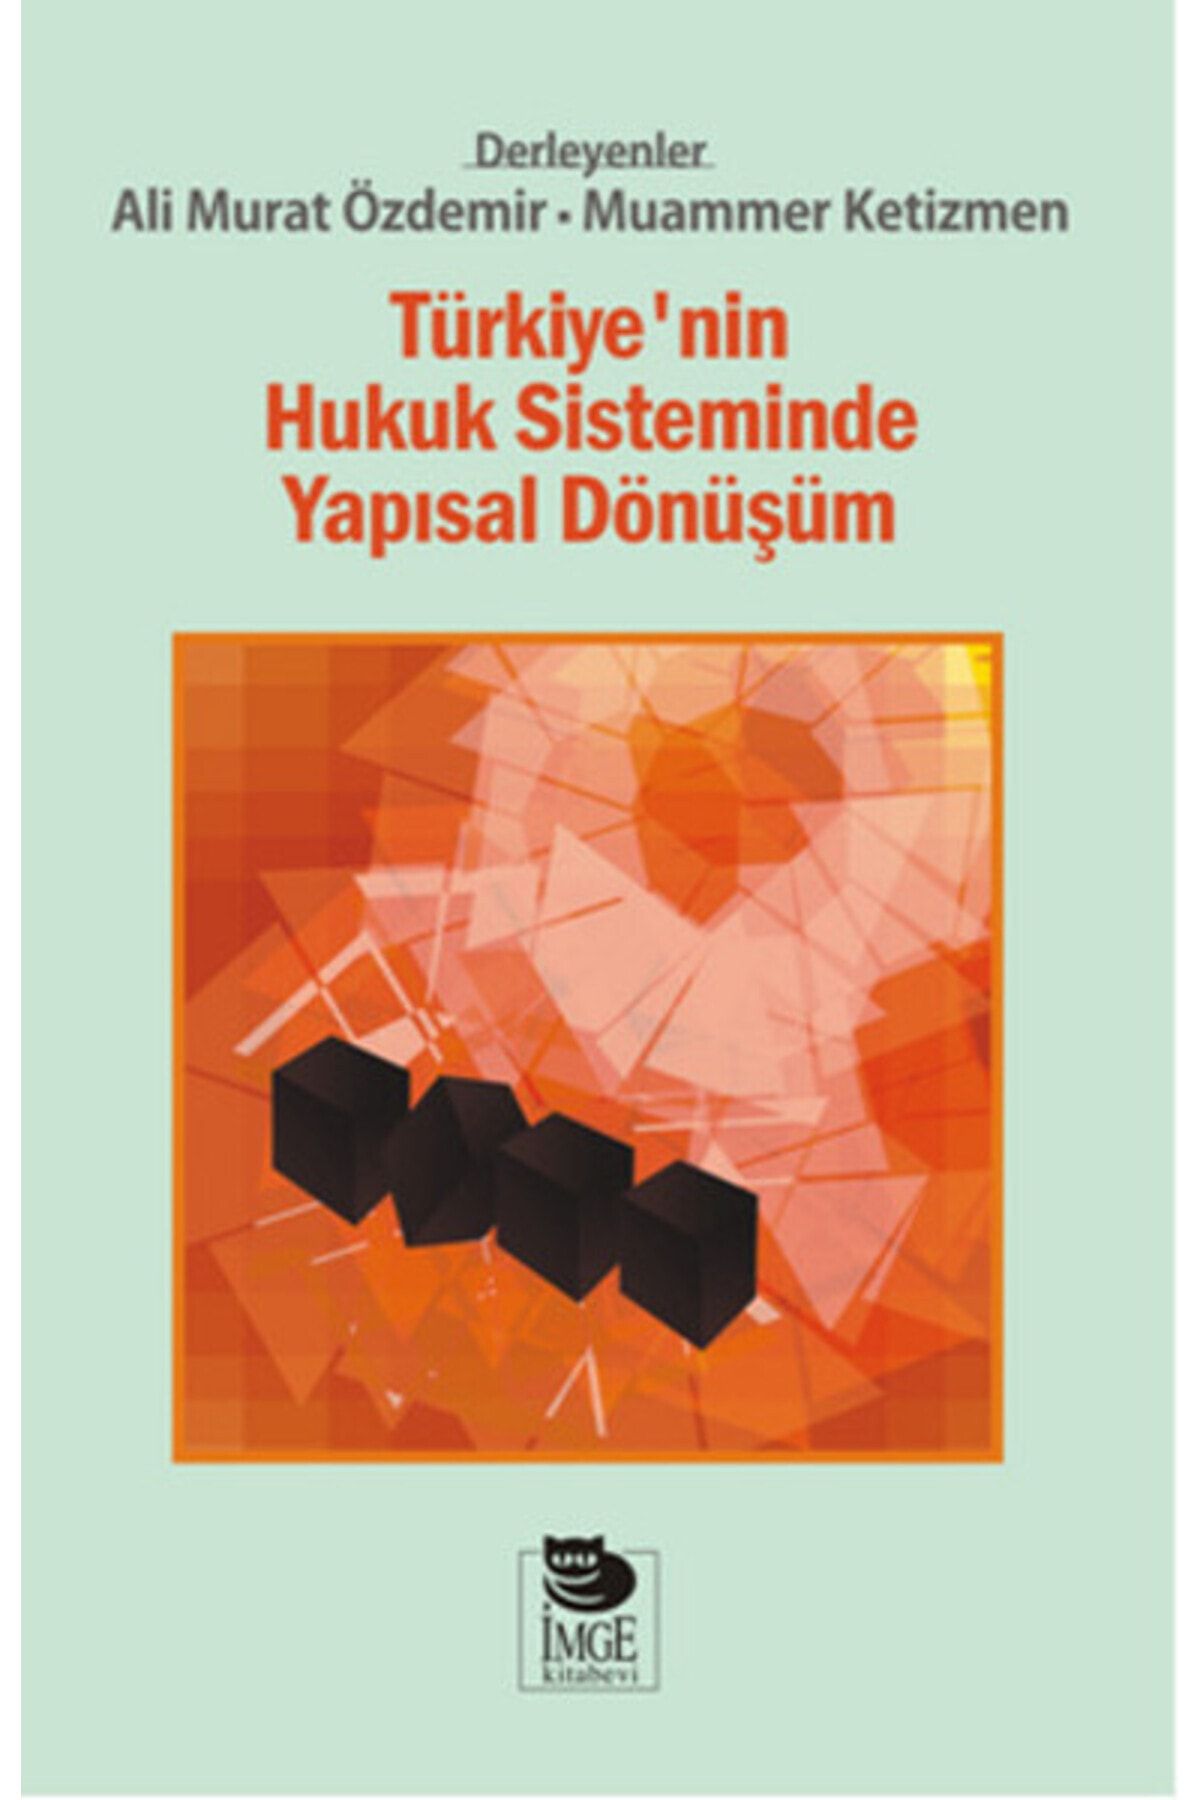 İmge Kitabevi Yayınları Türkiye'nin Hukuk Sisteminde Yapısal Dönüşüm